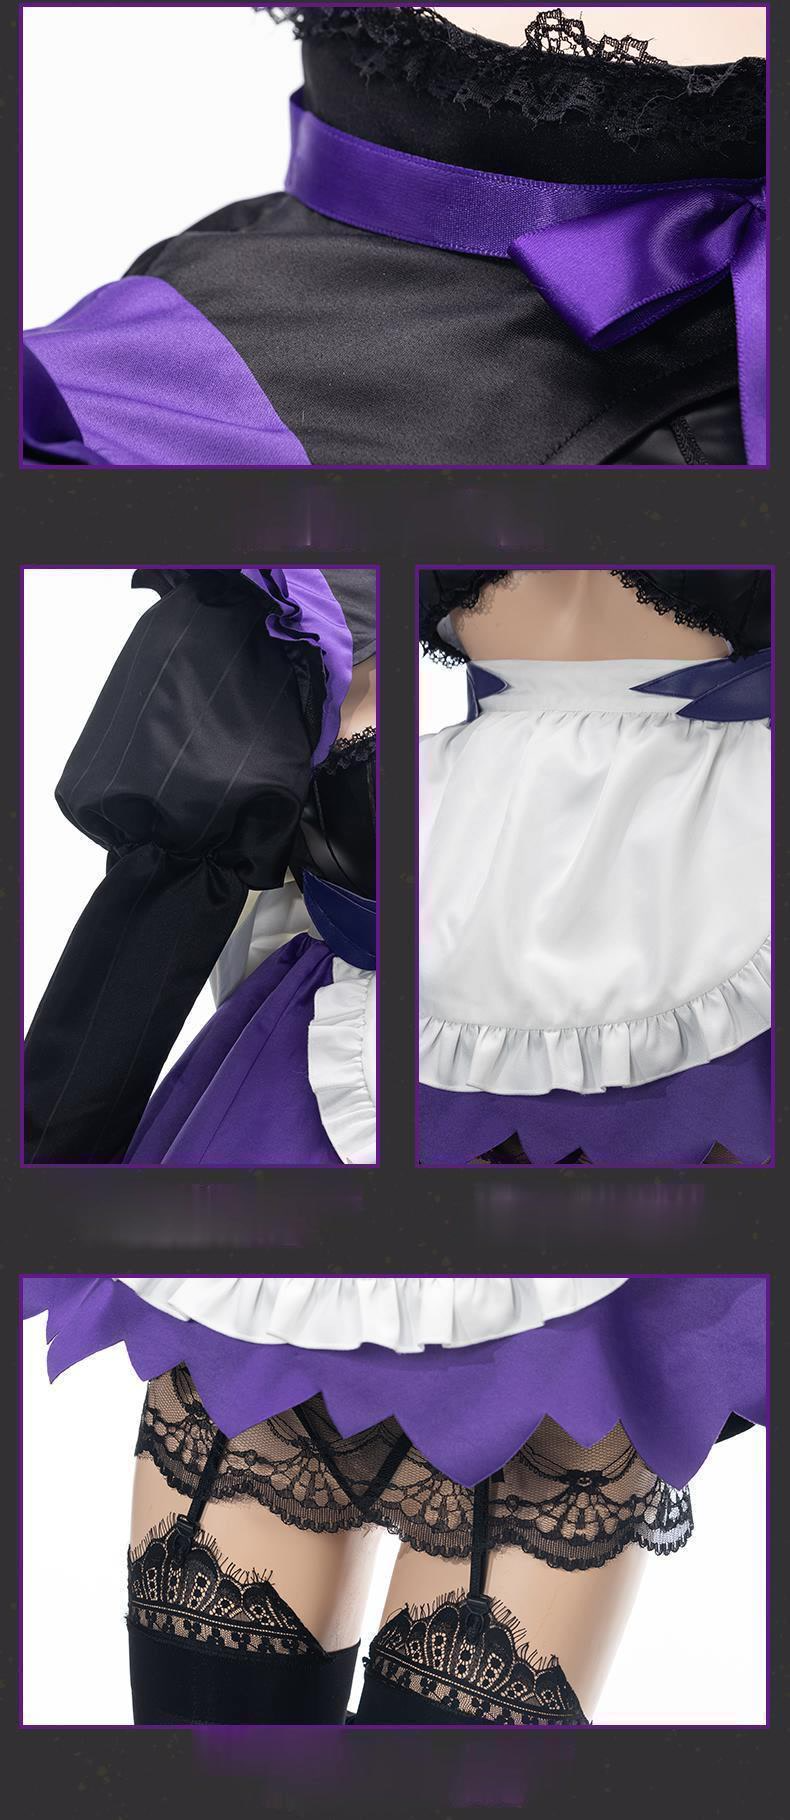 Fate/Grand Order Anime FGO Fate Go Altria Pendragon Black Cosplay Costume - CrazeCosplay